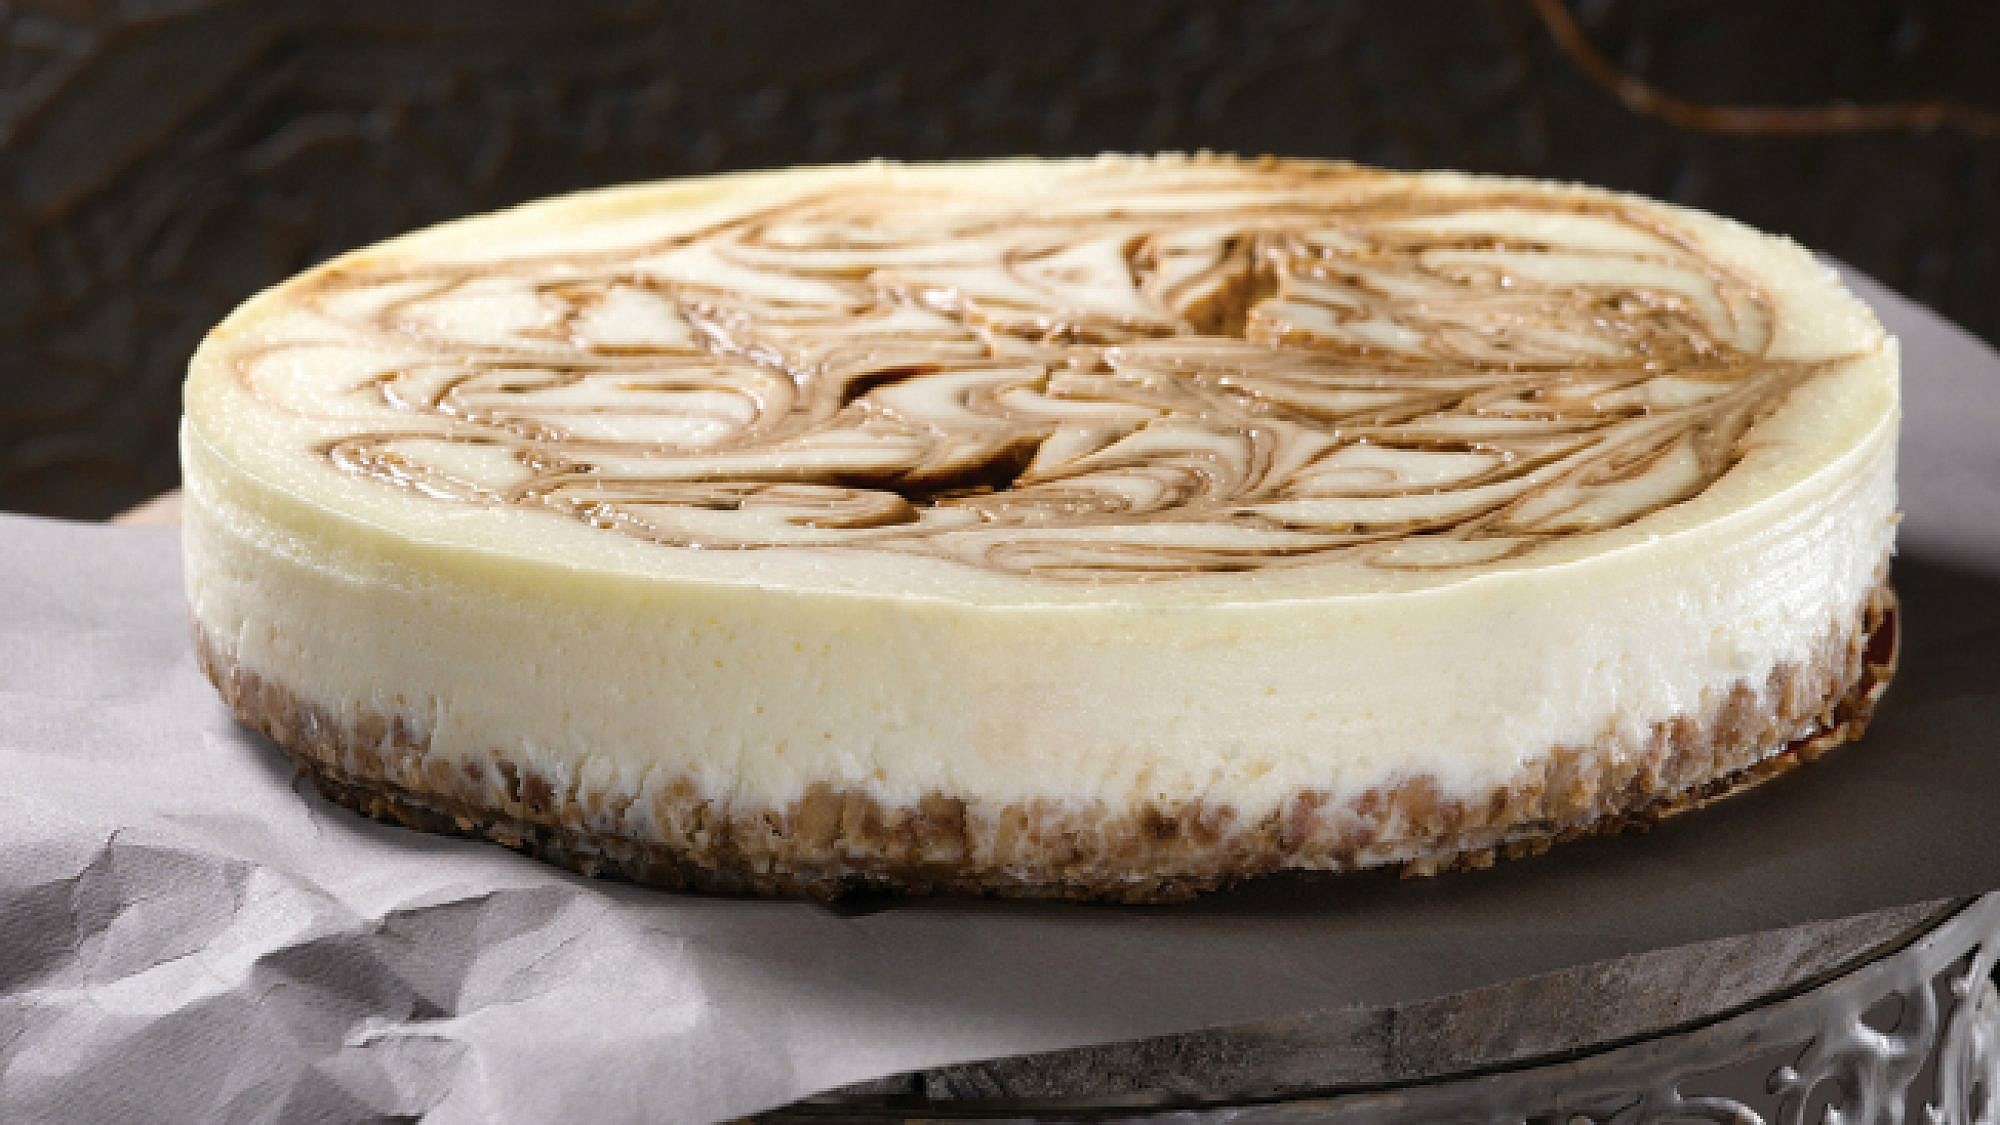 הקפאינית - עוגת גבינה עם מערבולת סילאן-קפה. צילום: רונן מנגן | סגנון: רותם ניר